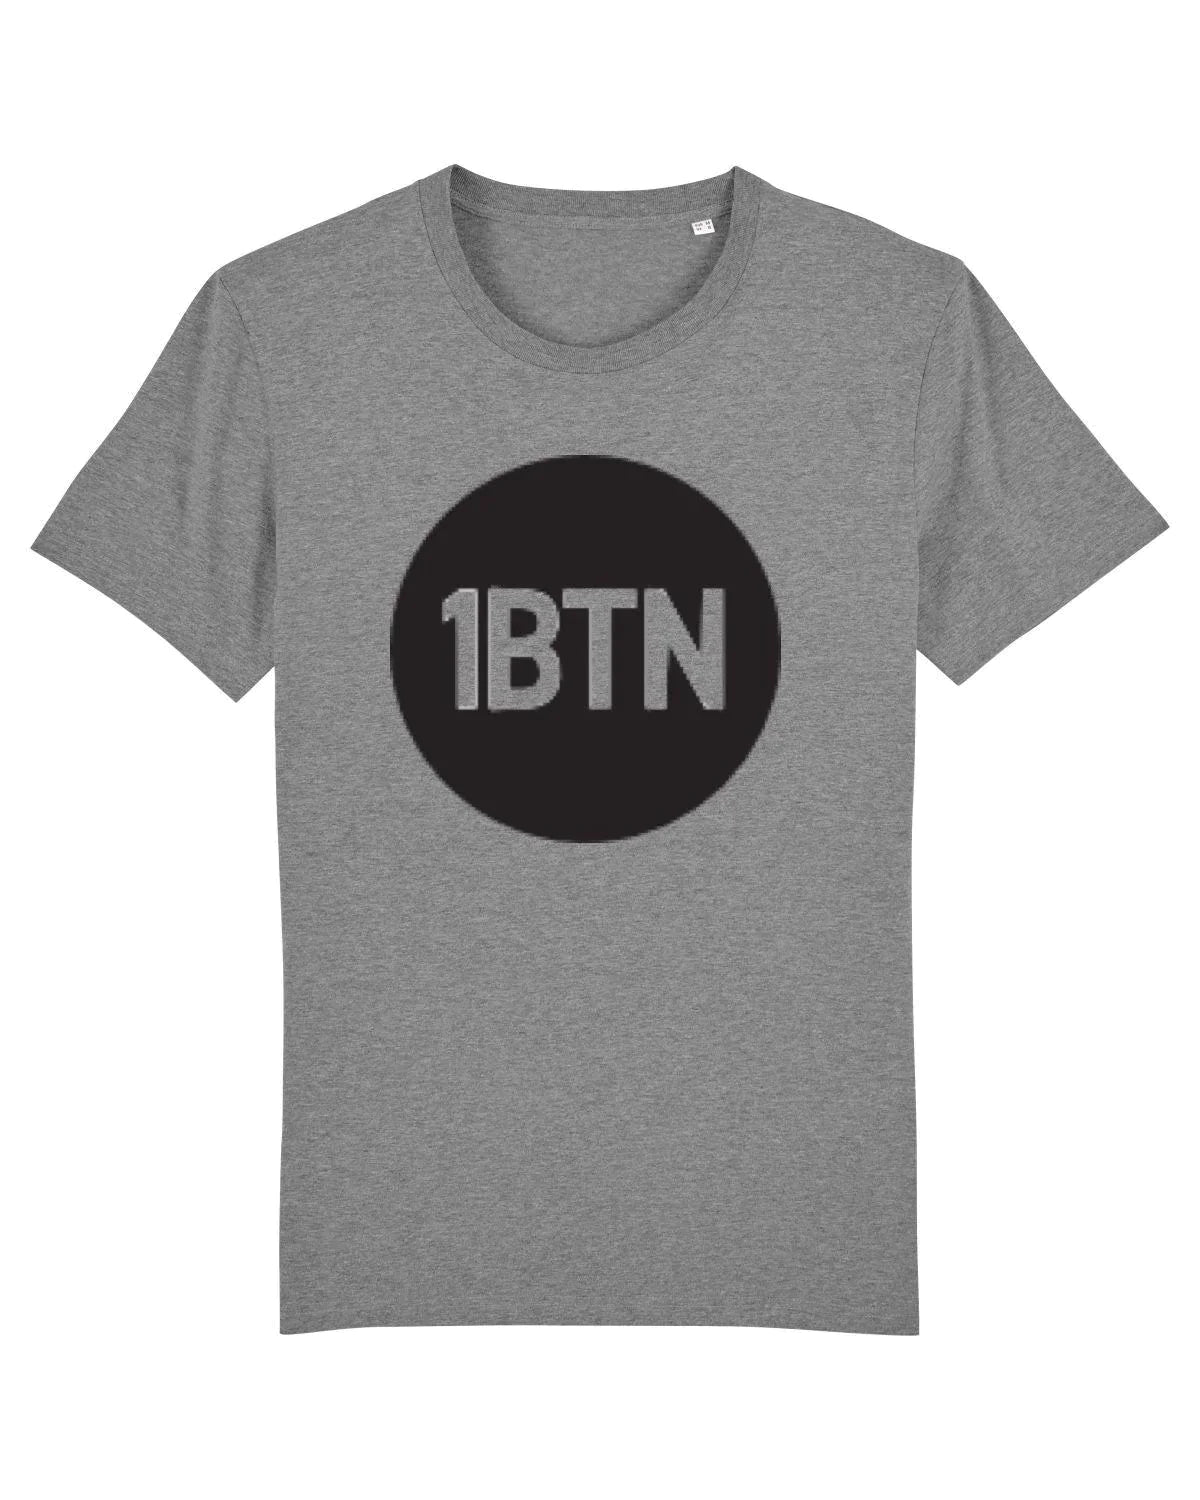 1BTN LARGE LOGO: T-Shirt Official Merchandise of 1BTN.FM (5 Colour Options) - SOUND IS COLOUR